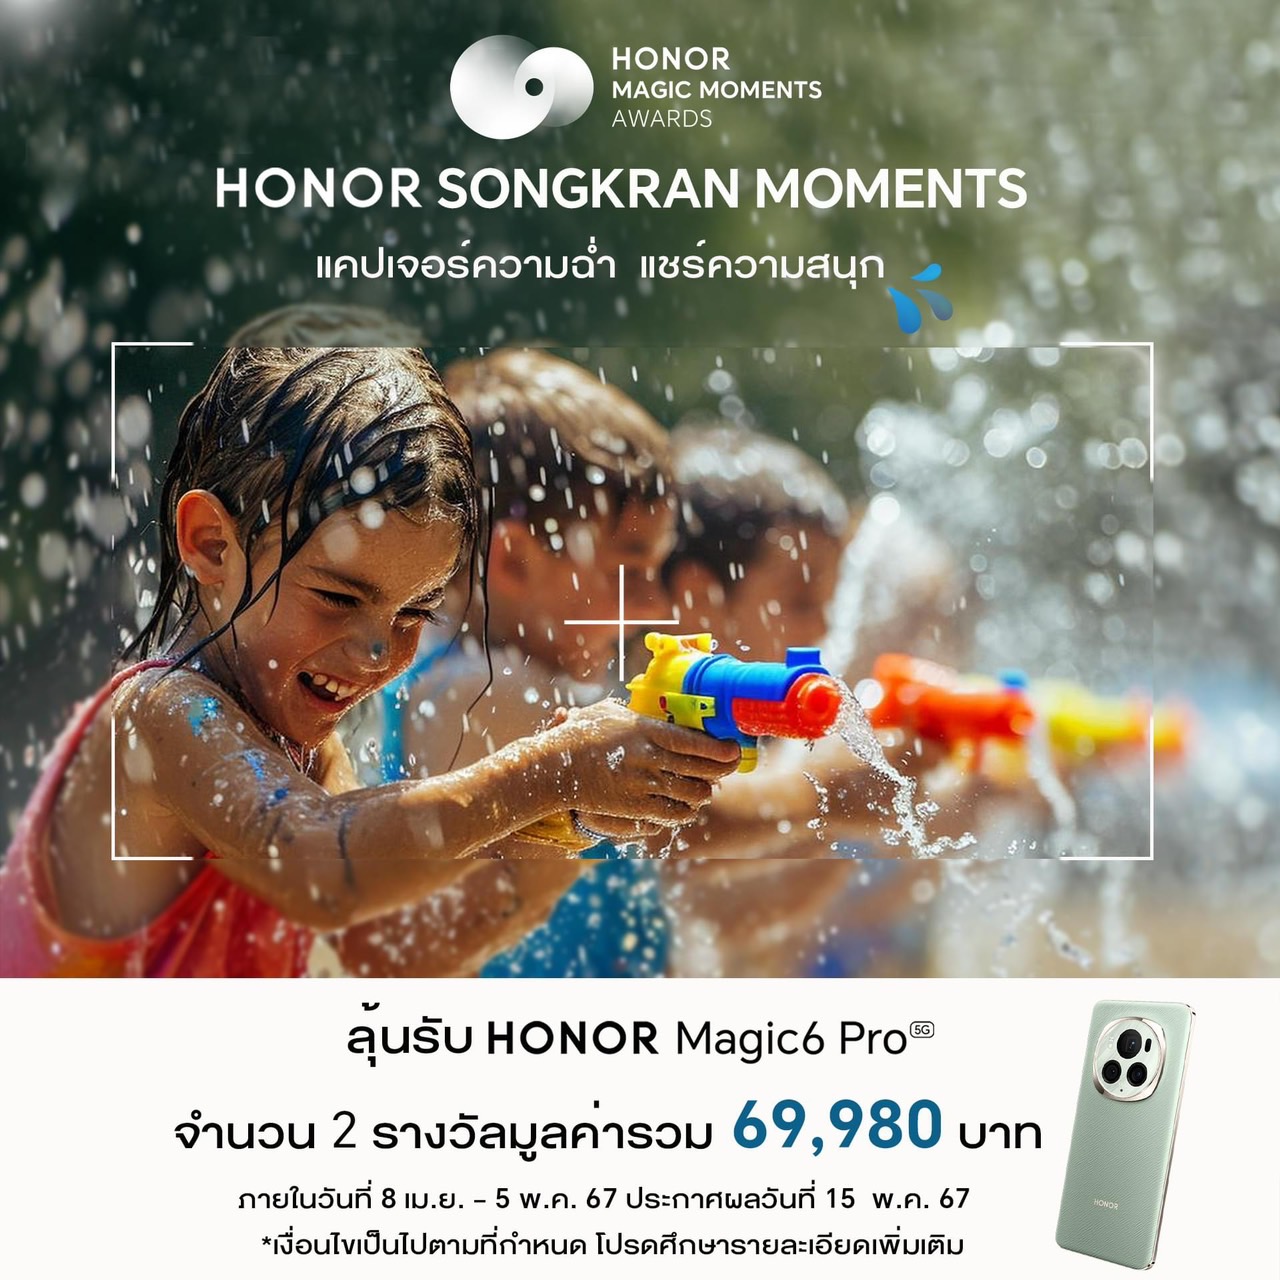 HONOR พร้อมชวนทุกคนส่งภาพประกวดในกิจกรรม HONOR Songkran Moments